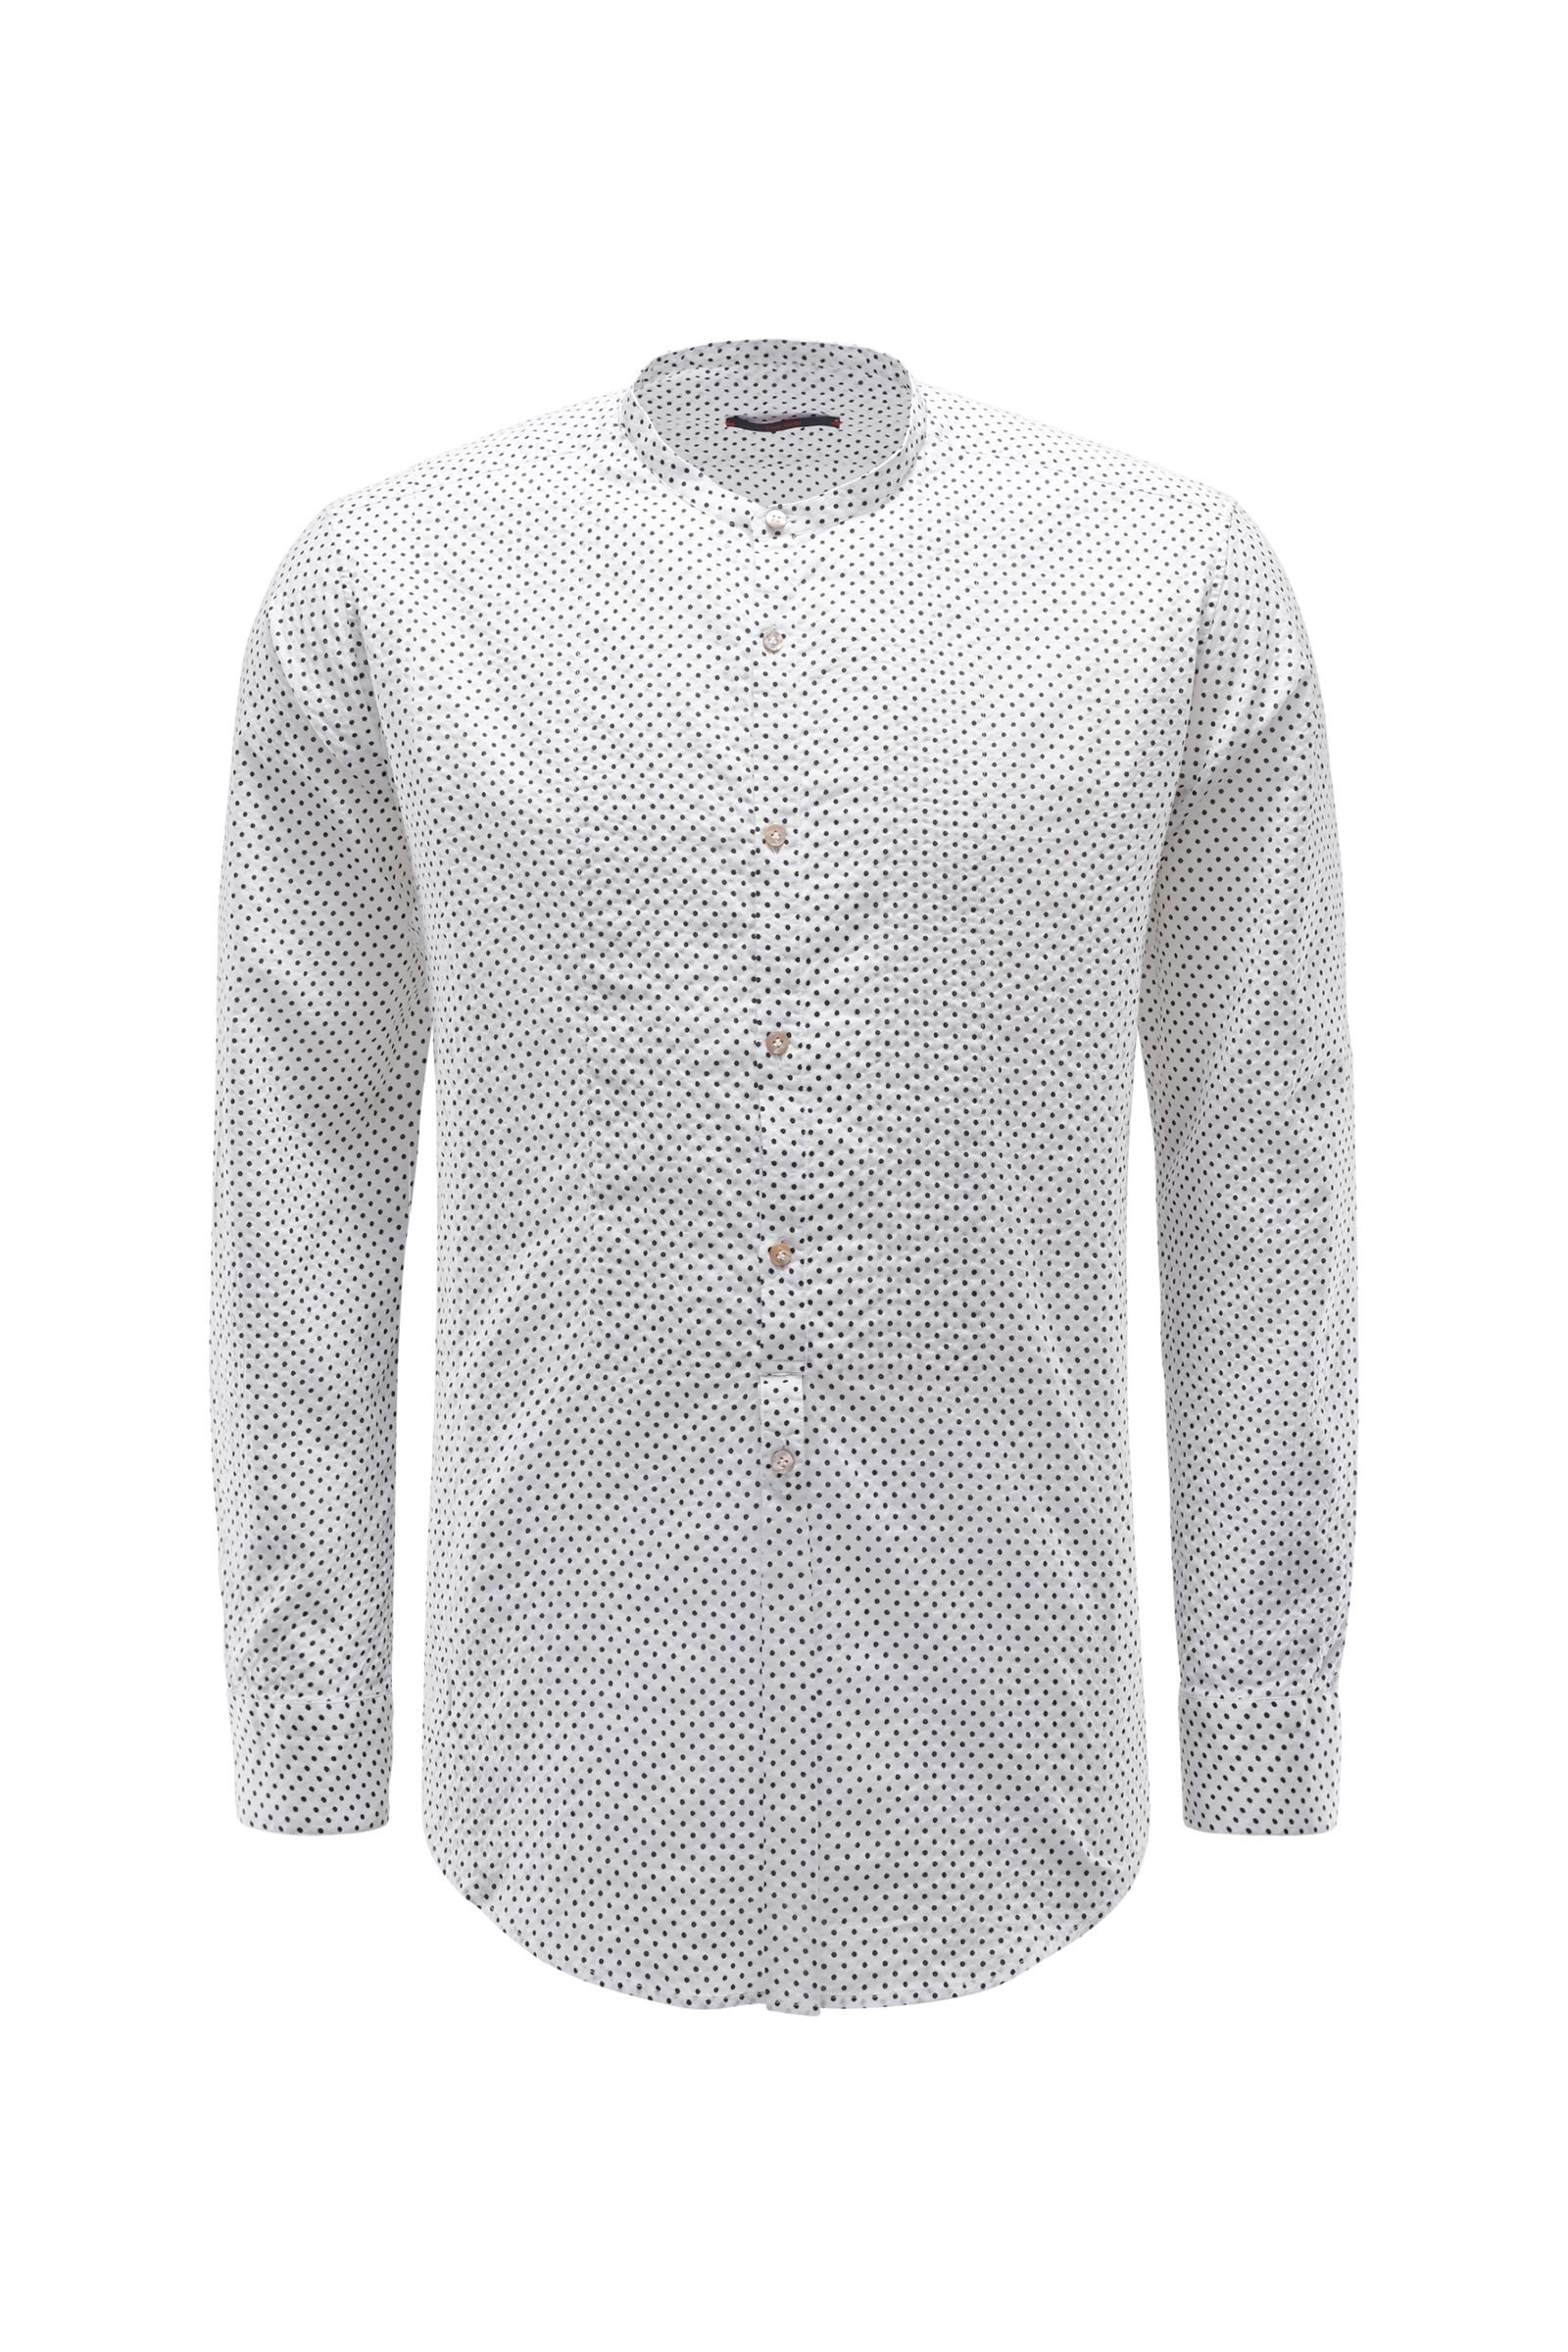 Seersucker shirt 'Shedir' grandad collar white patterned